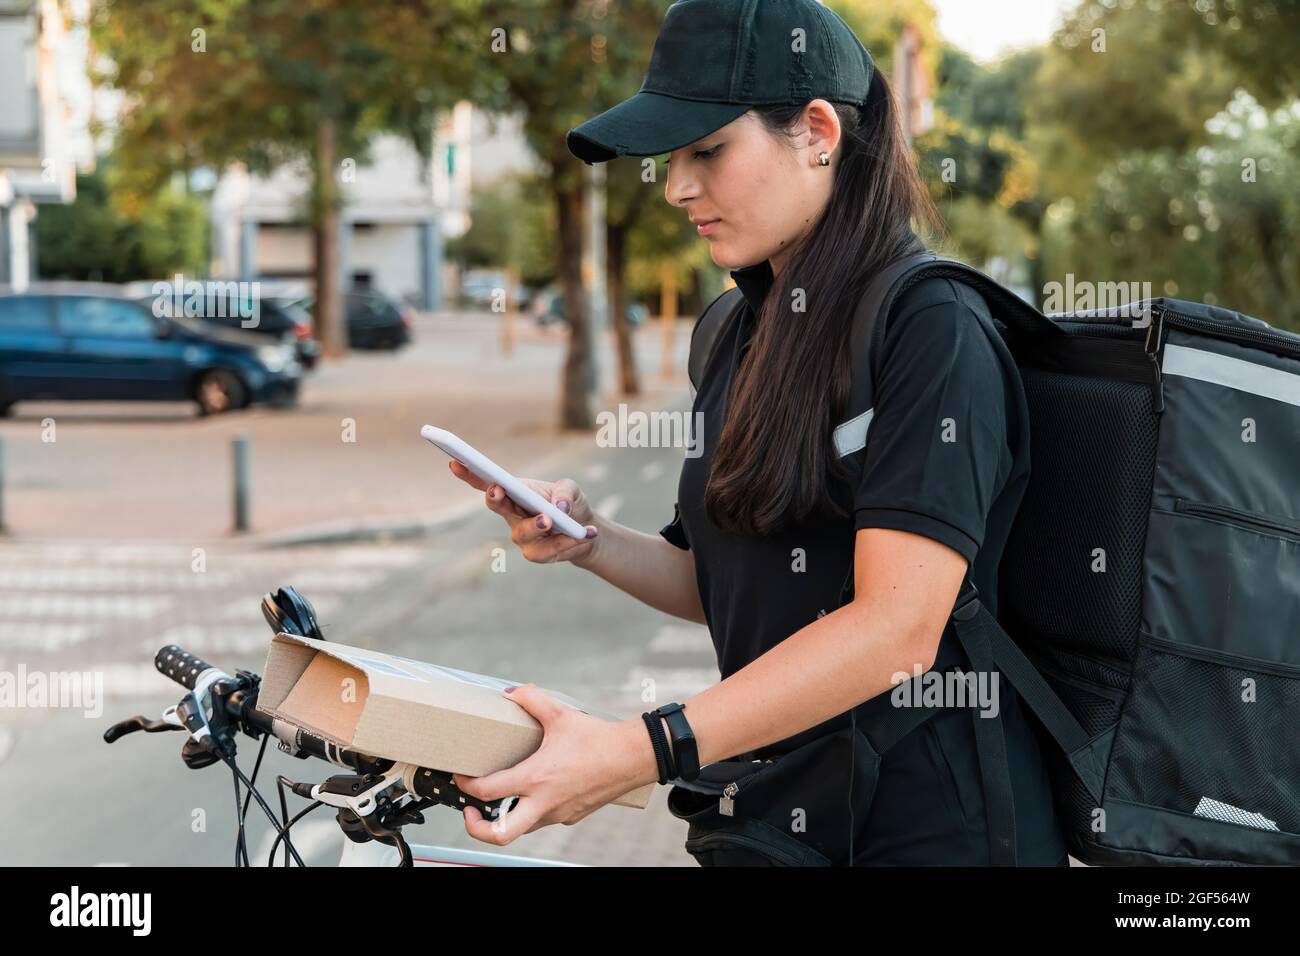 Jeune femme living scanner le paquet avec un smartphone Banque D'Images